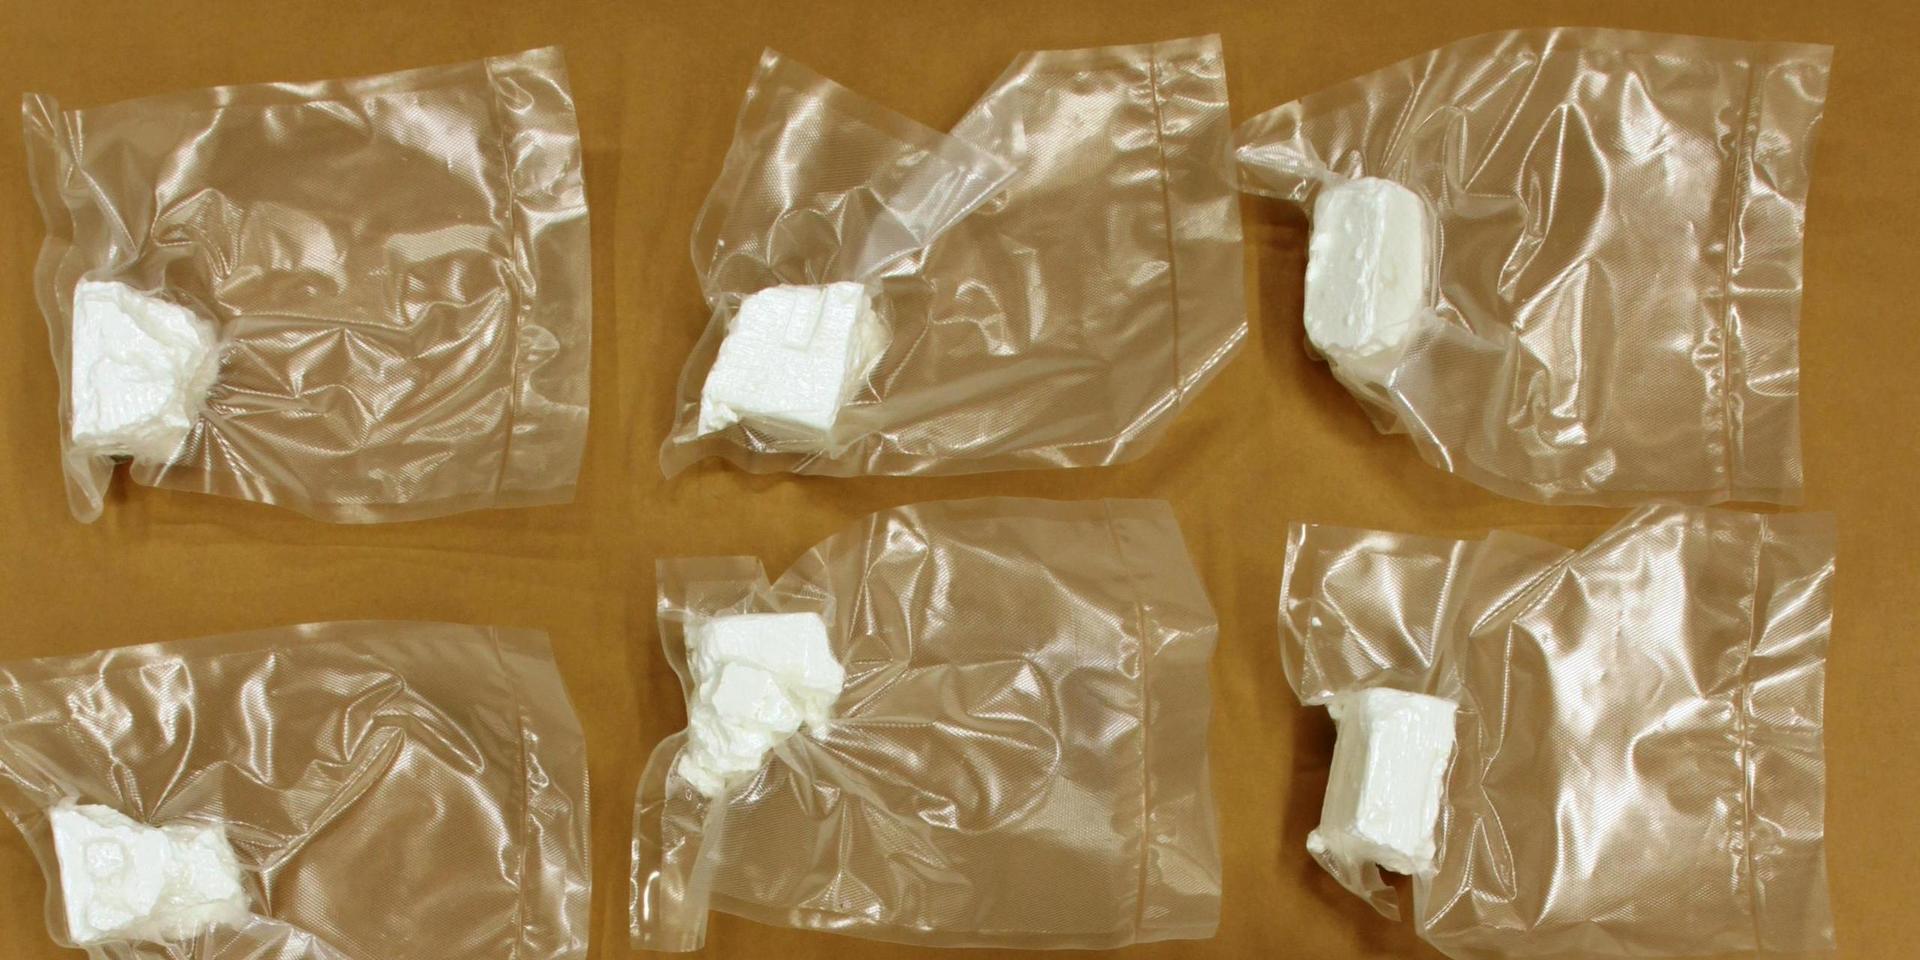 Bild från polisens rekordbeslag av kristalliserat metamfetamin som gjordes i december.